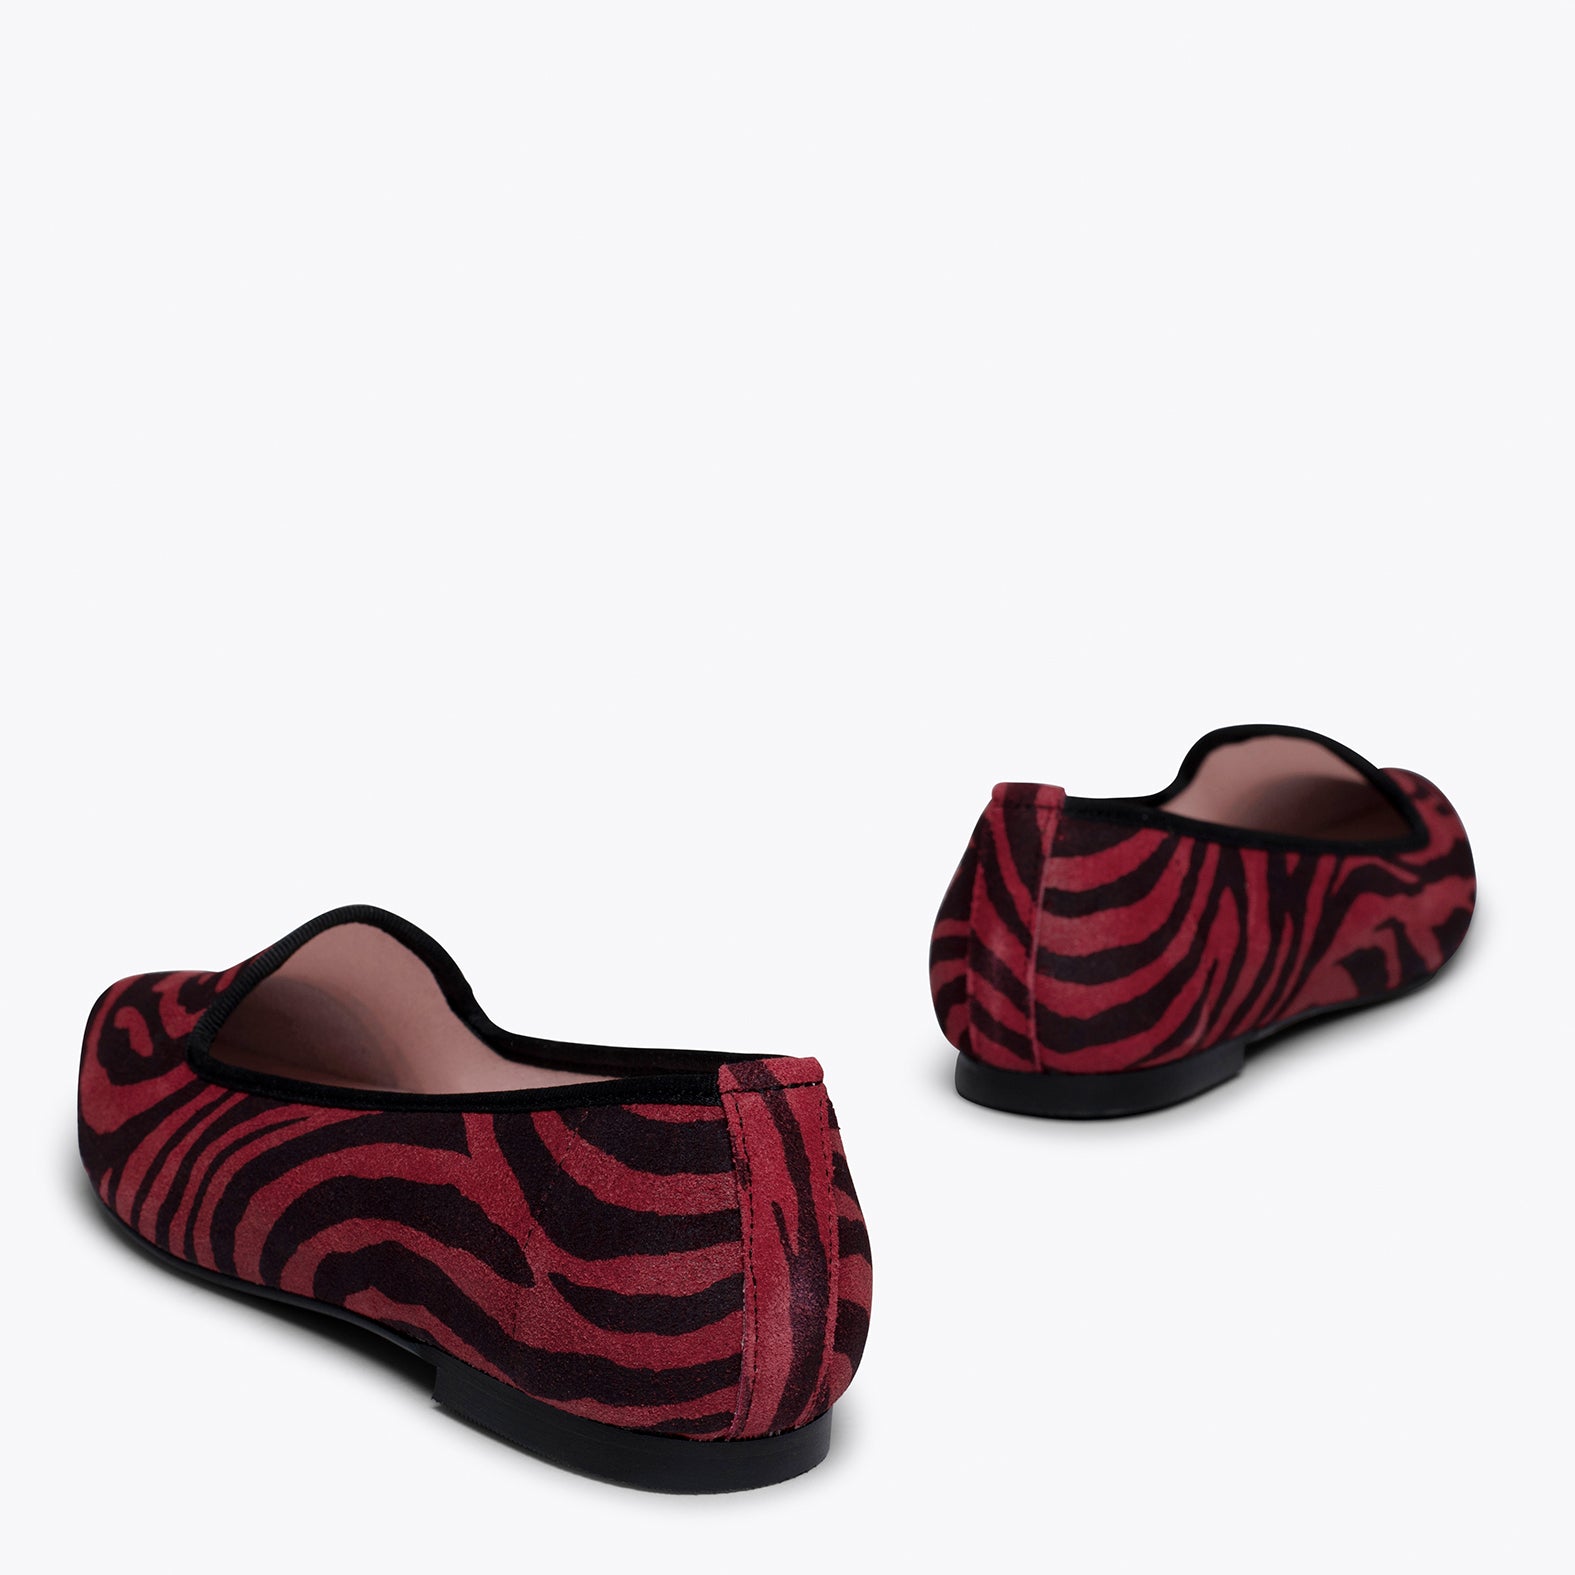 SLIPPER -RED zebra print slipper